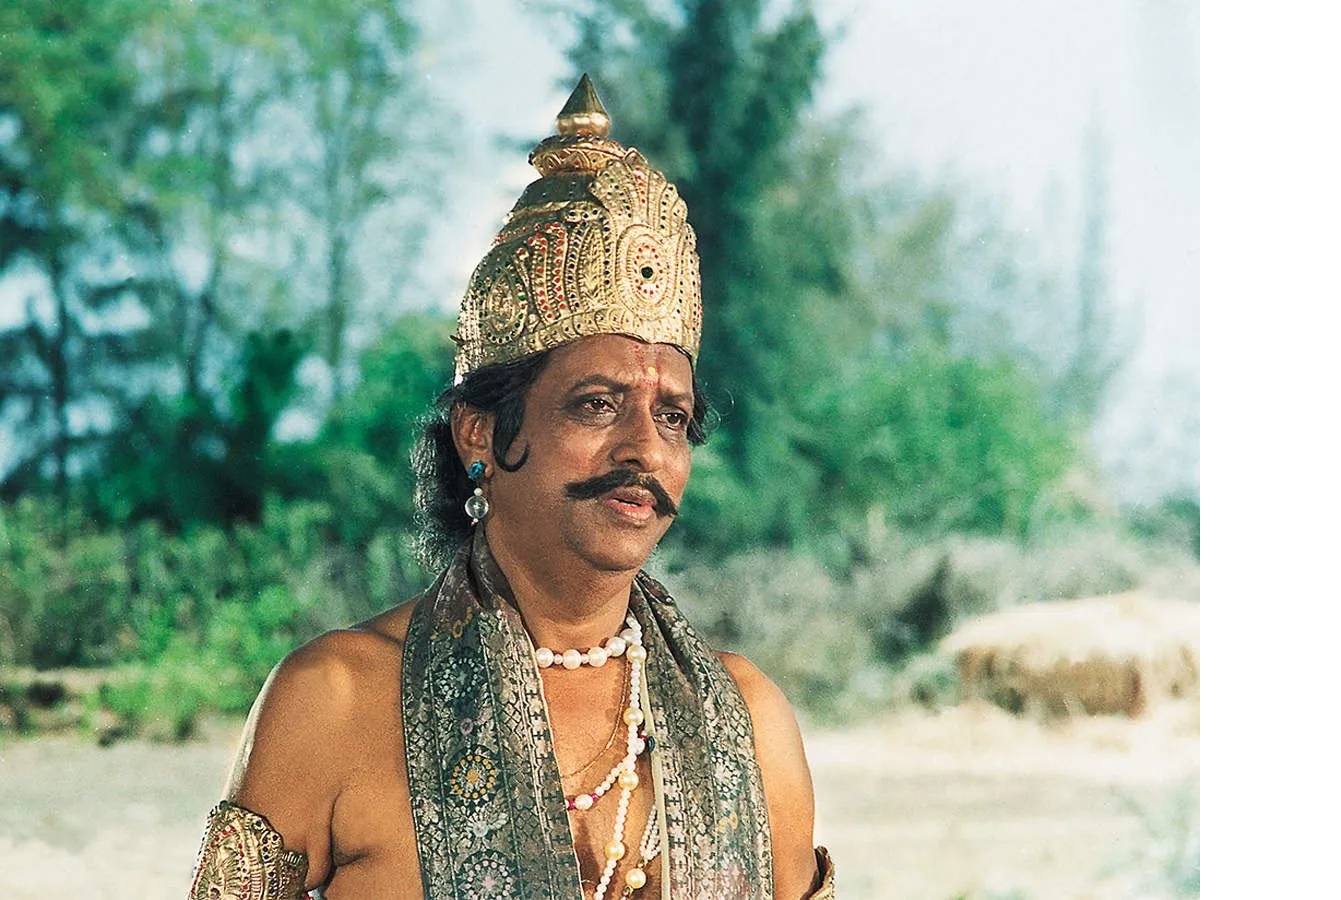 Chandrashekhar Vaidya